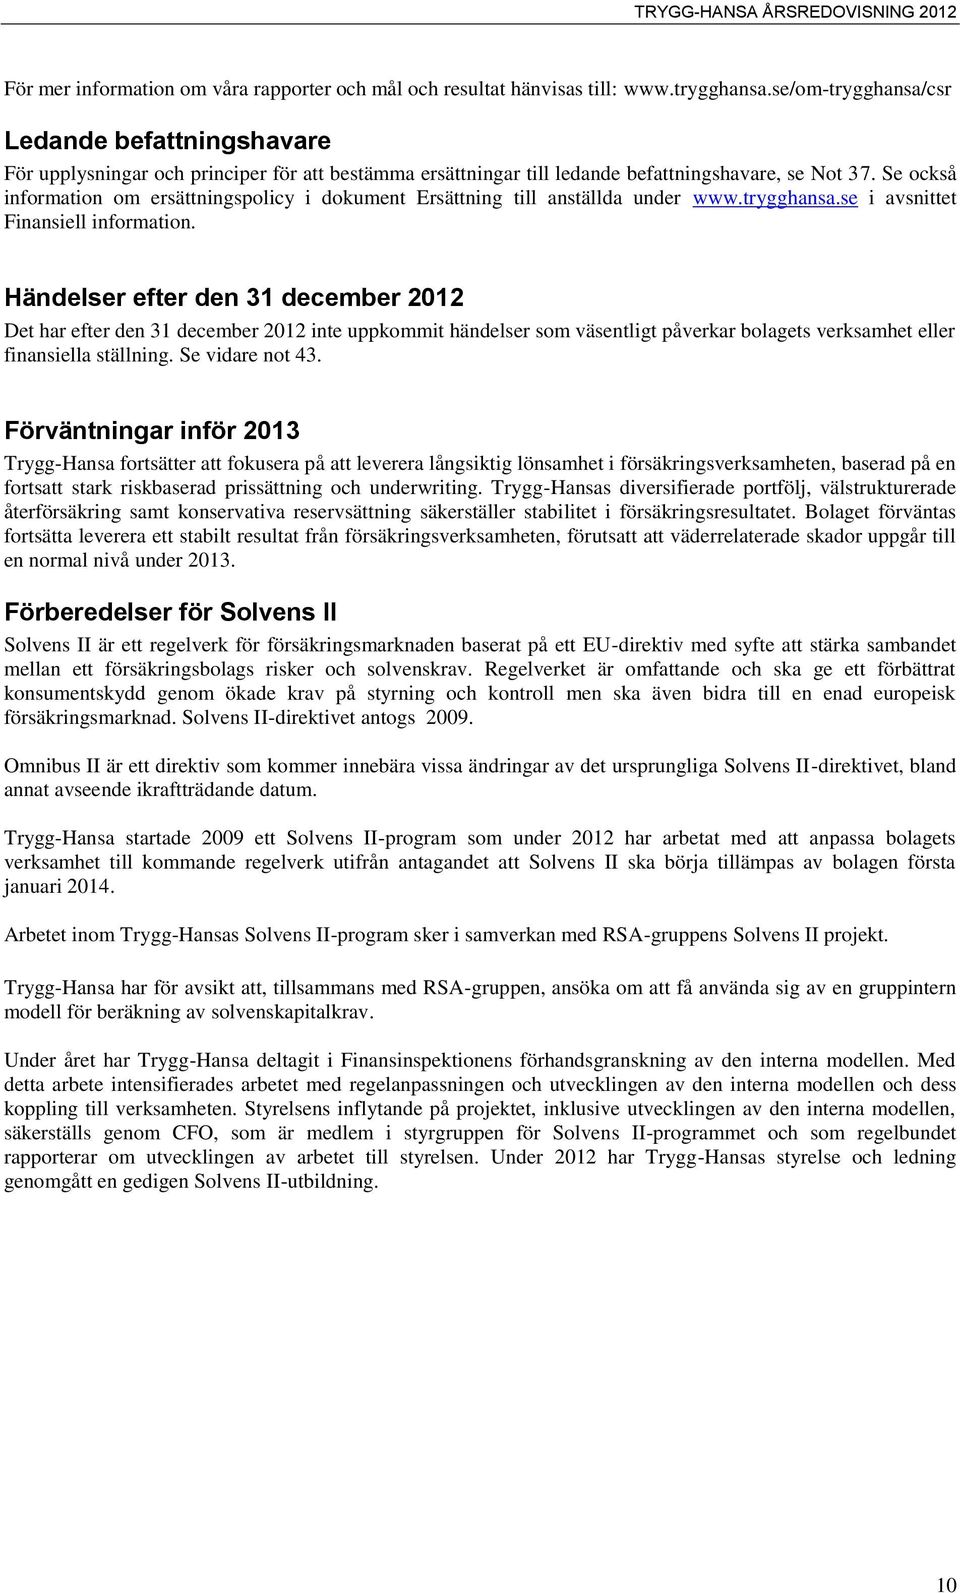 Se också information om ersättningspolicy i dokument Ersättning till anställda under www.trygghansa.se i avsnittet Finansiell information.